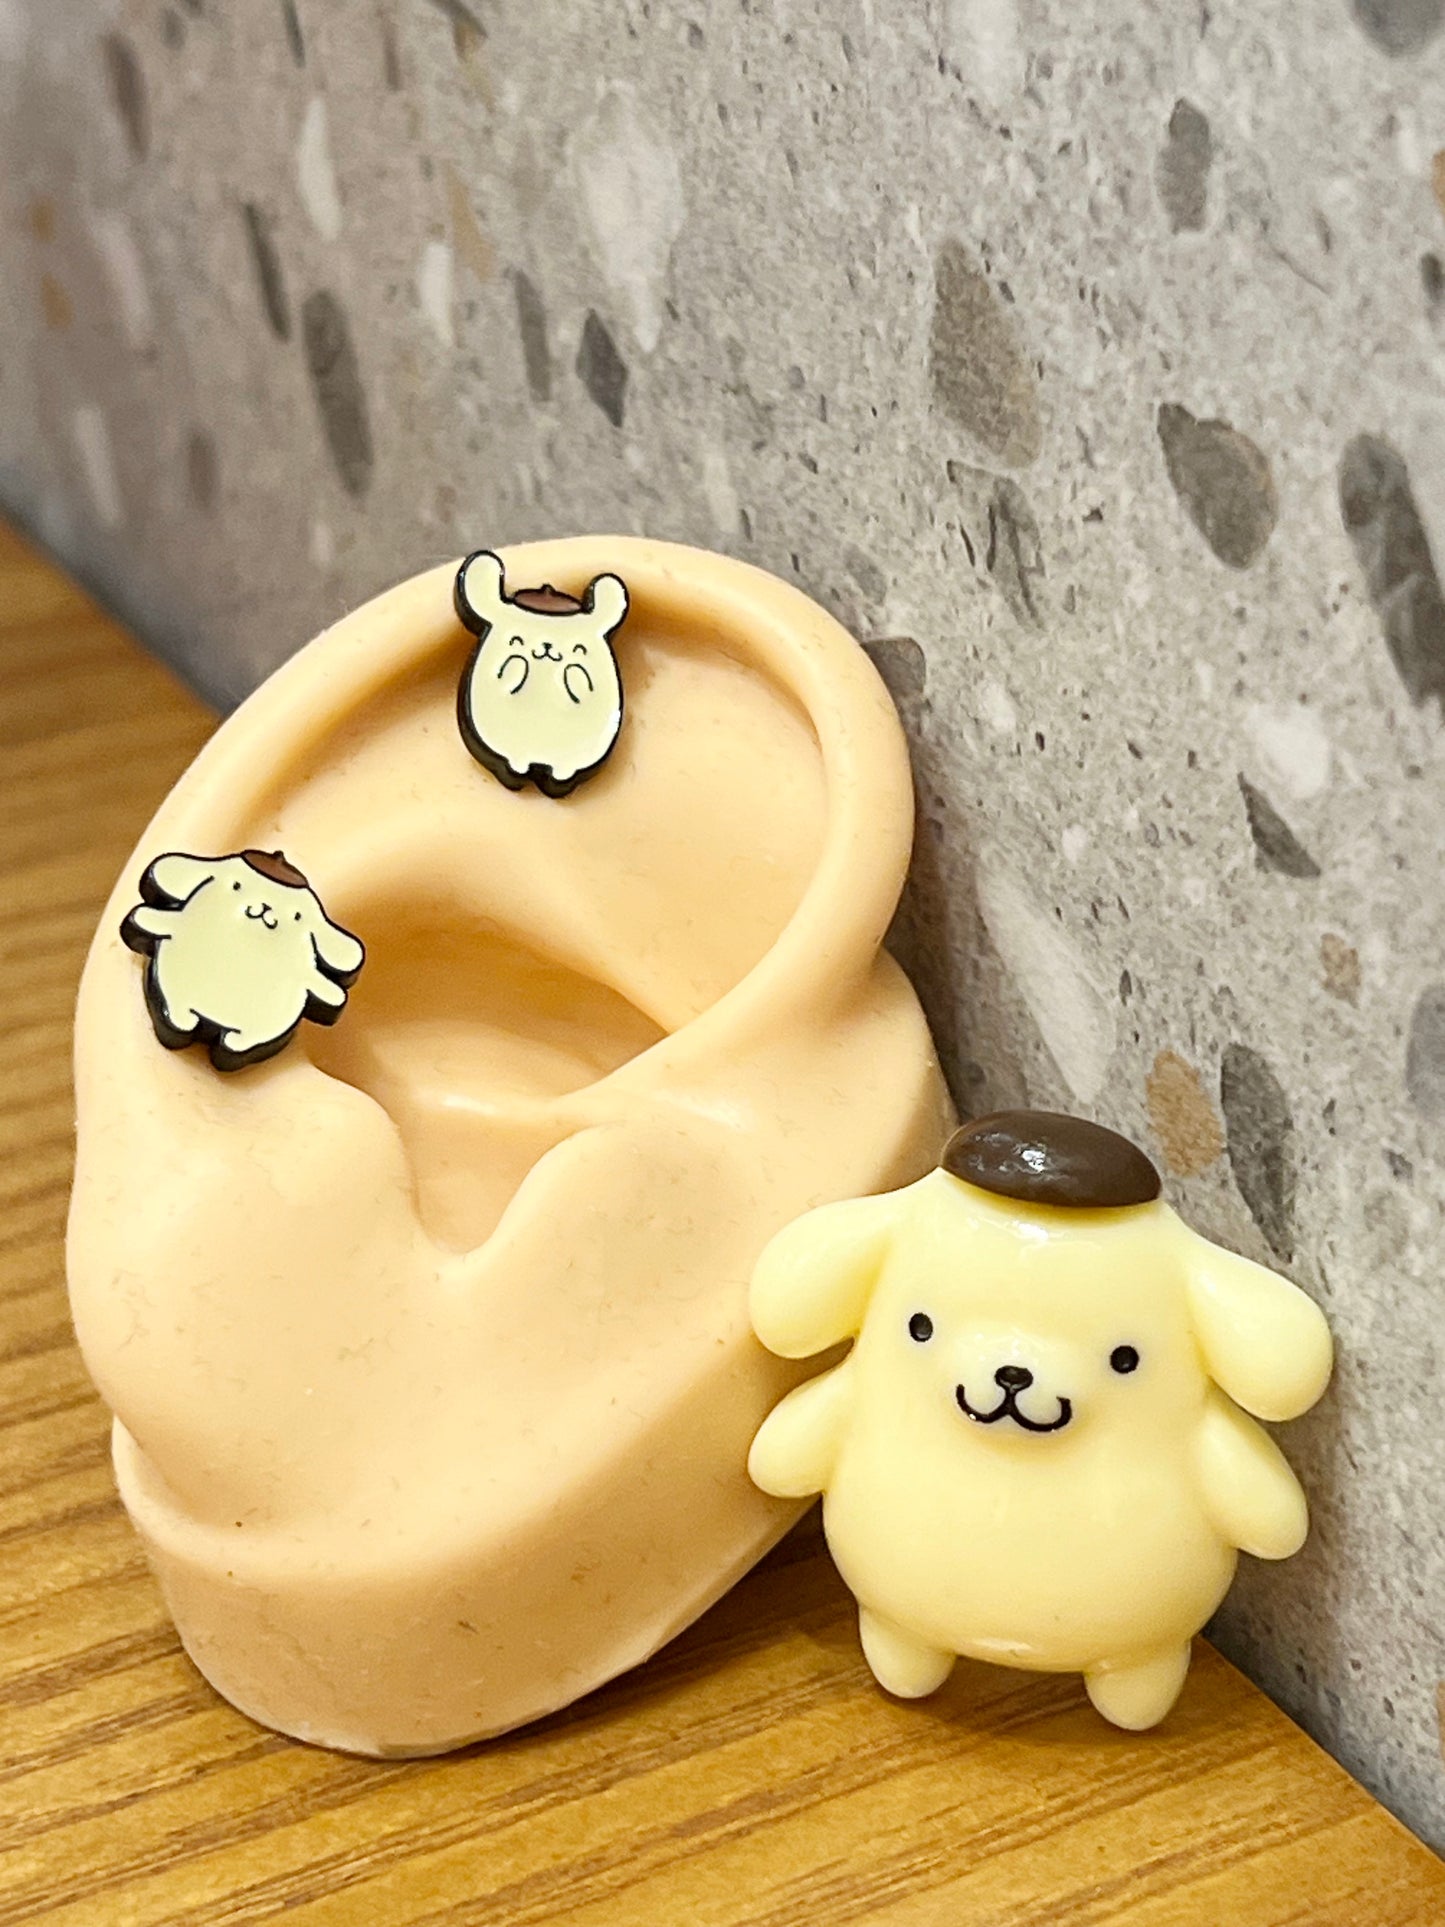 Sanrio characters Hello Kitty, pompompurin, Screw back earrings, screw back ball Ear Piercing, Barbells Surgical Steel Cartilage earrings,Golden Retriever earrings